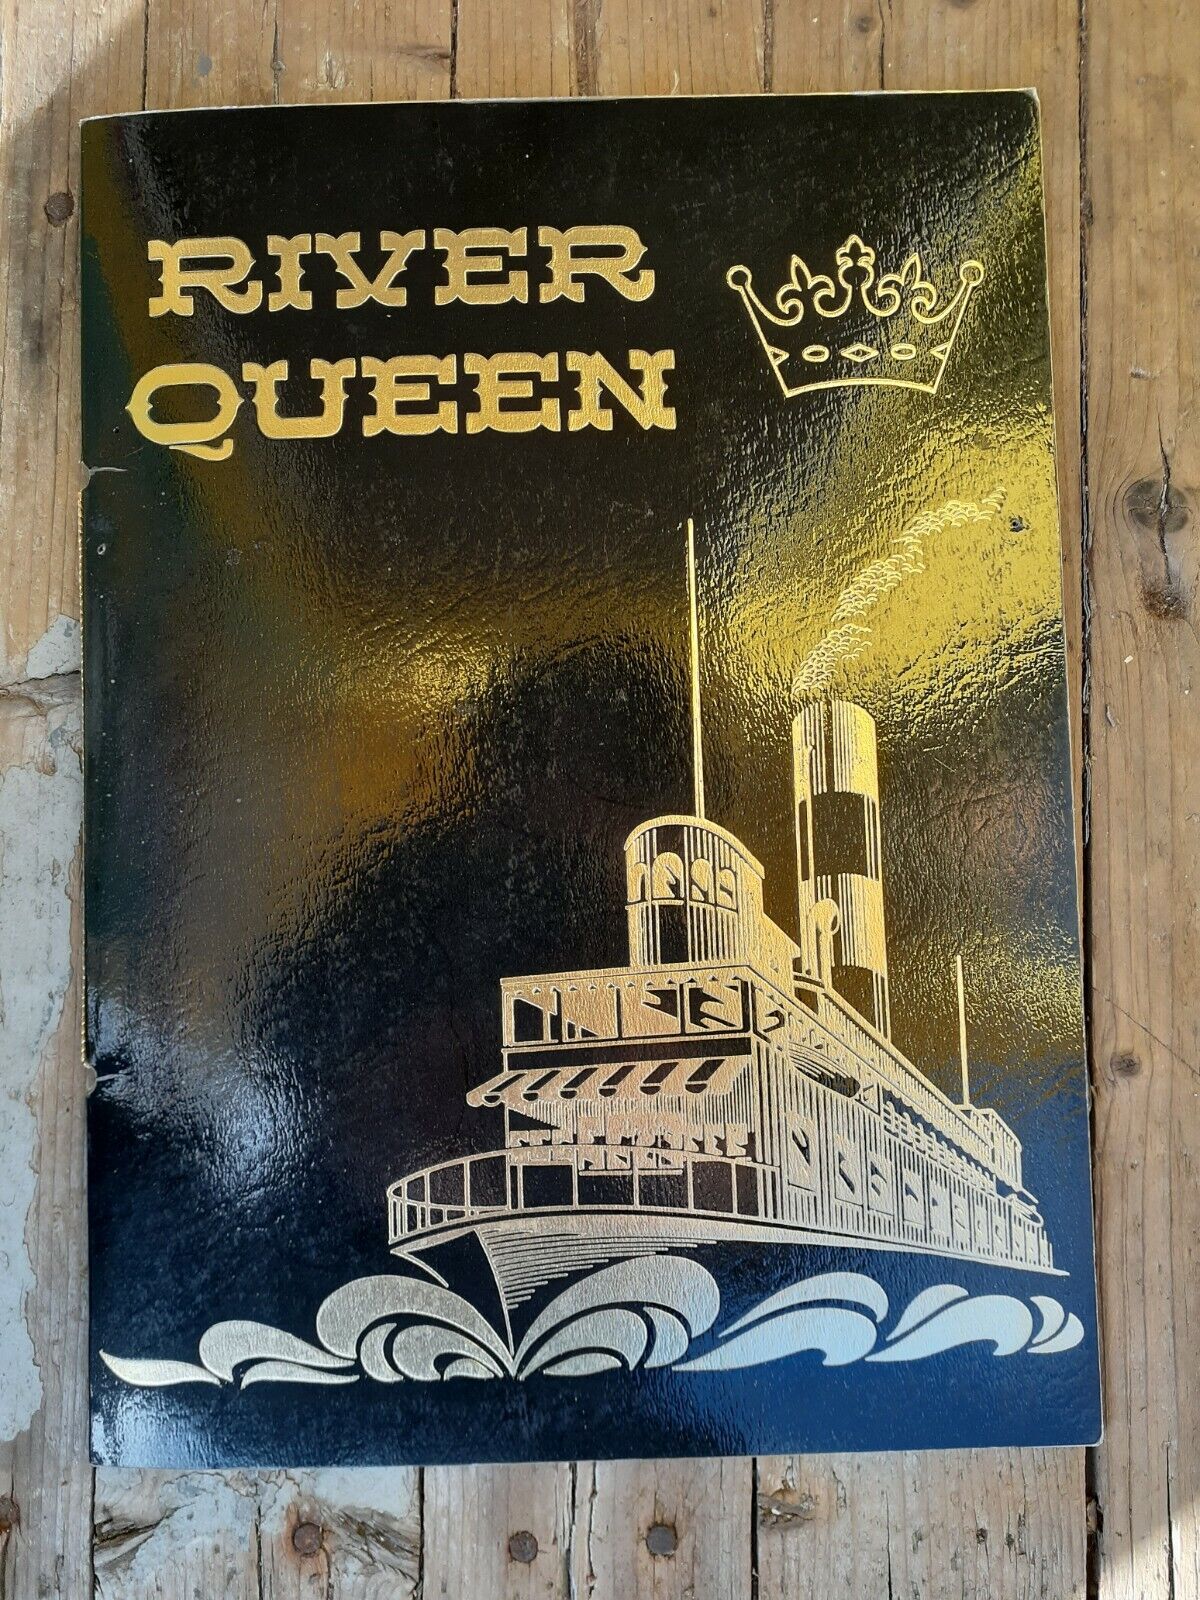 Vintage River Queen Floating Restaurant Dinner Menu Portland Oregon 1980s